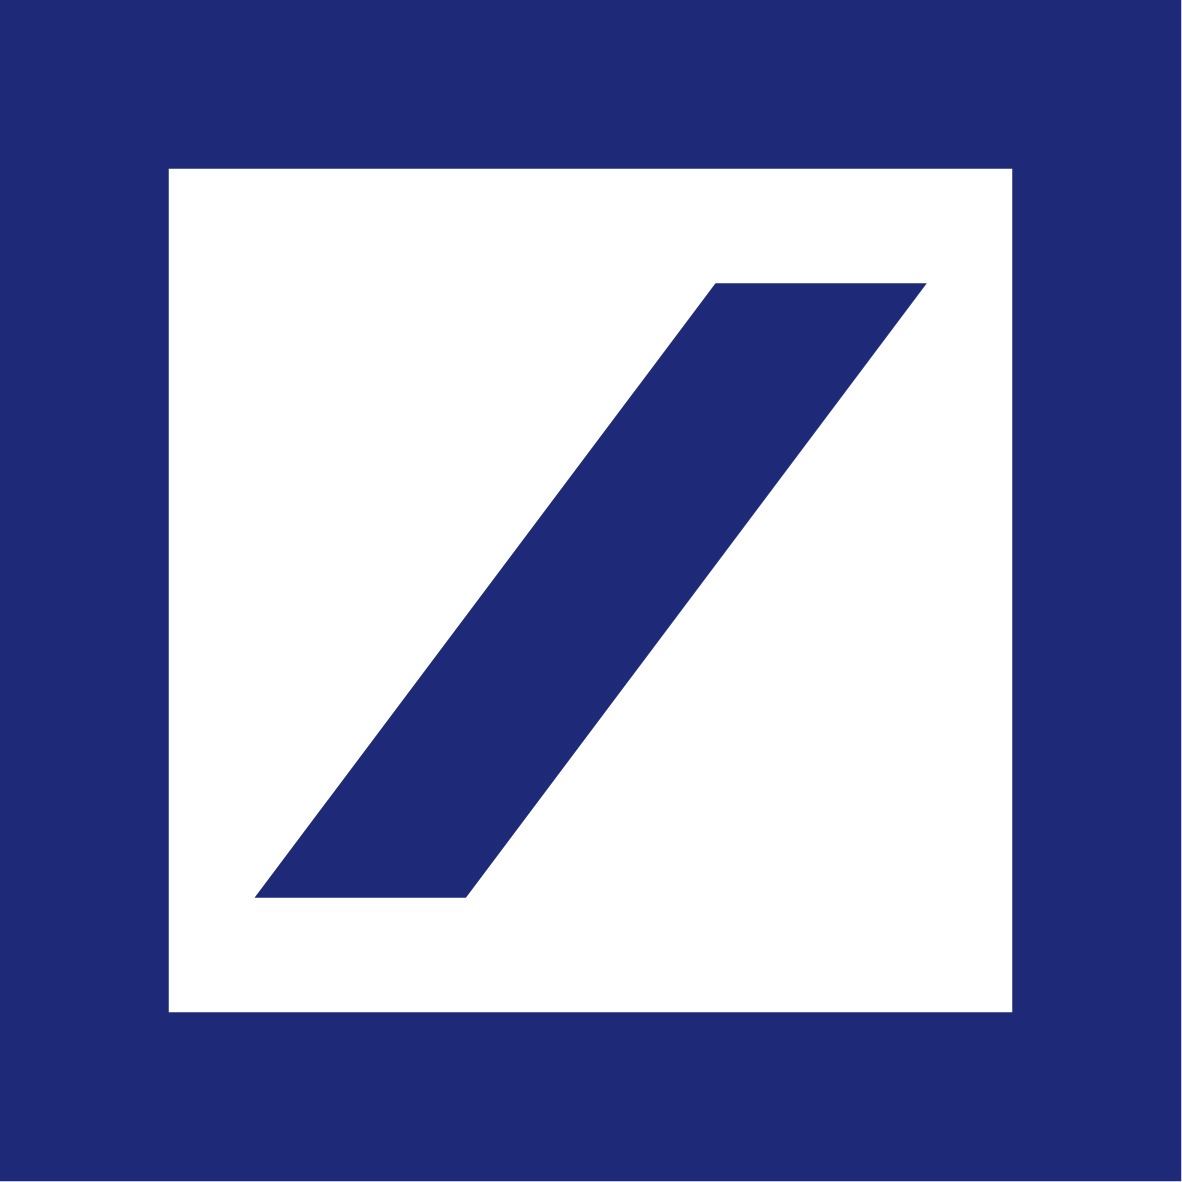 Kundenlogo Deutsche Bank Wealth Management